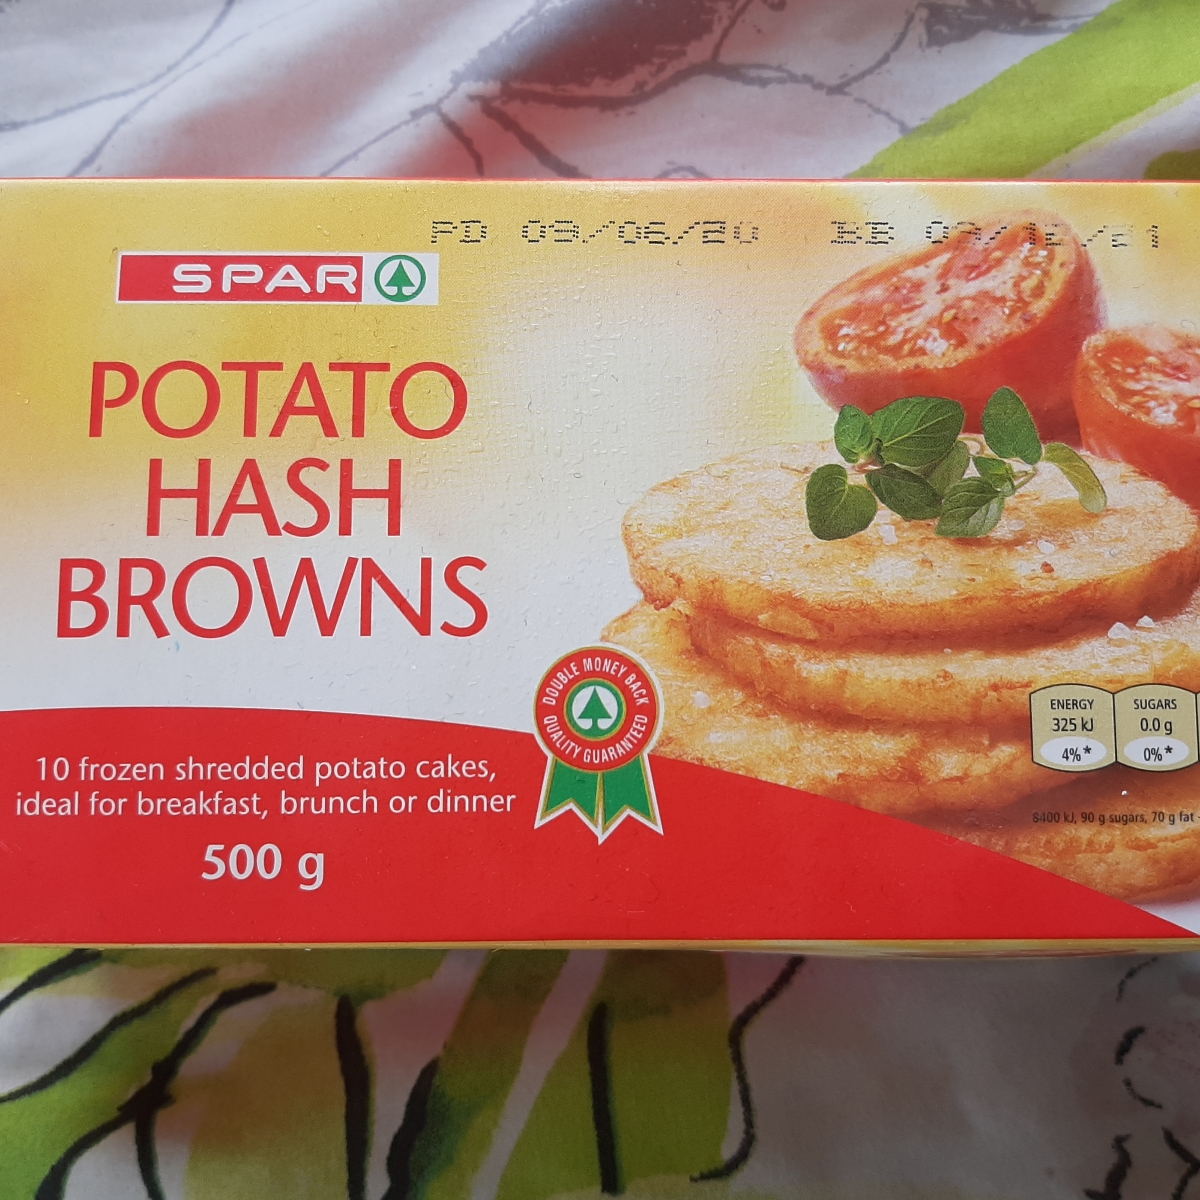 Spar Potato Hash Browns Reviews | abillion